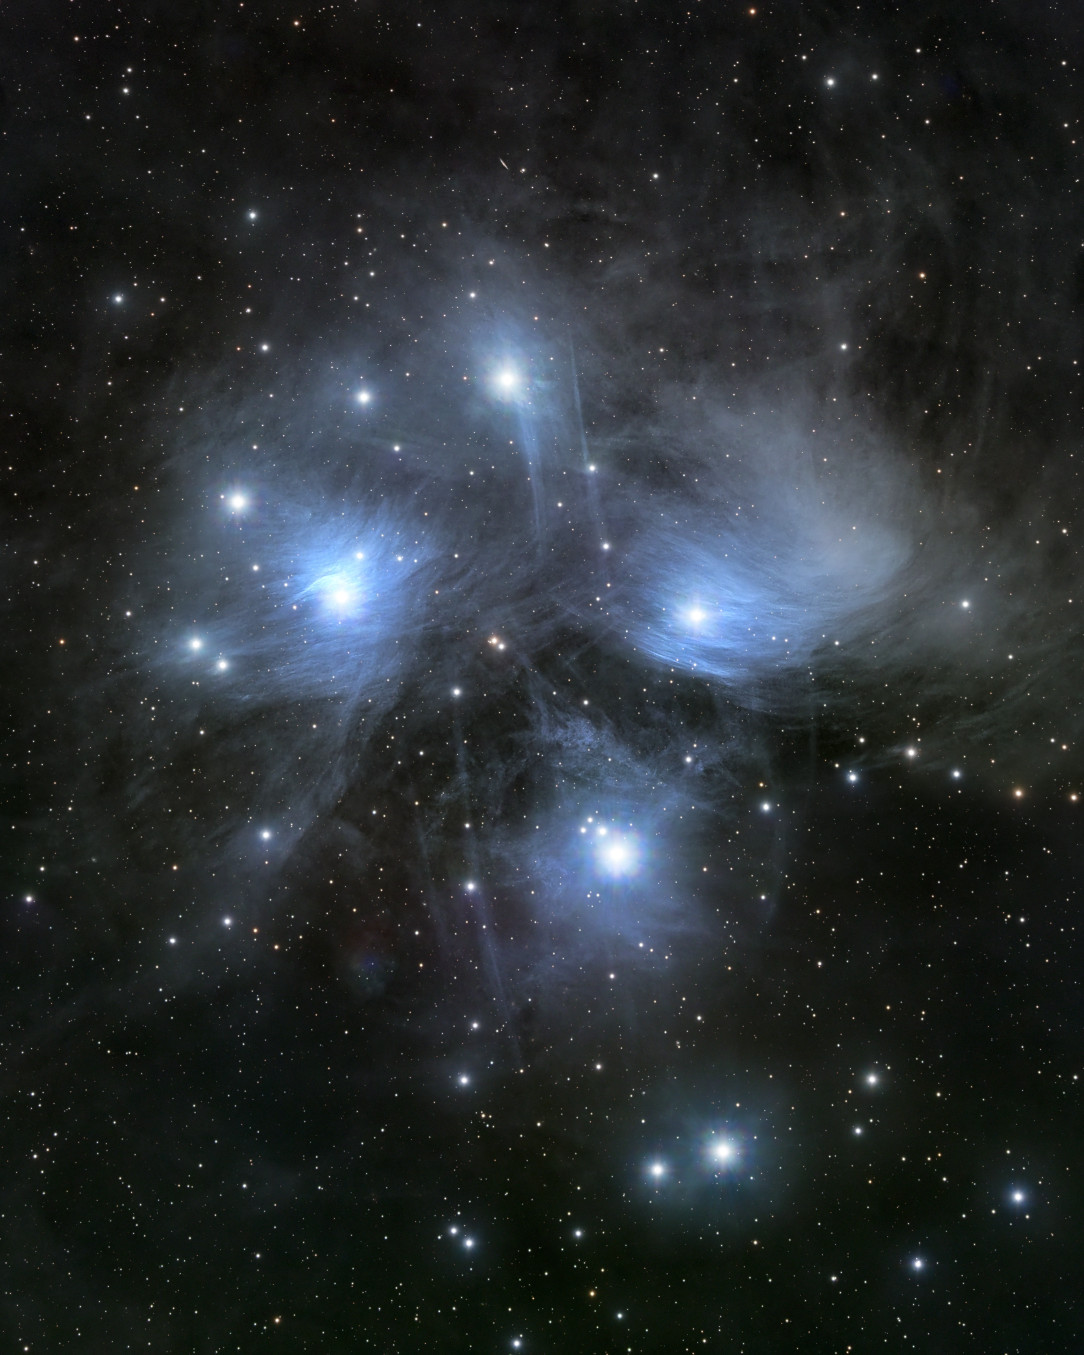 M45 - Pleiades